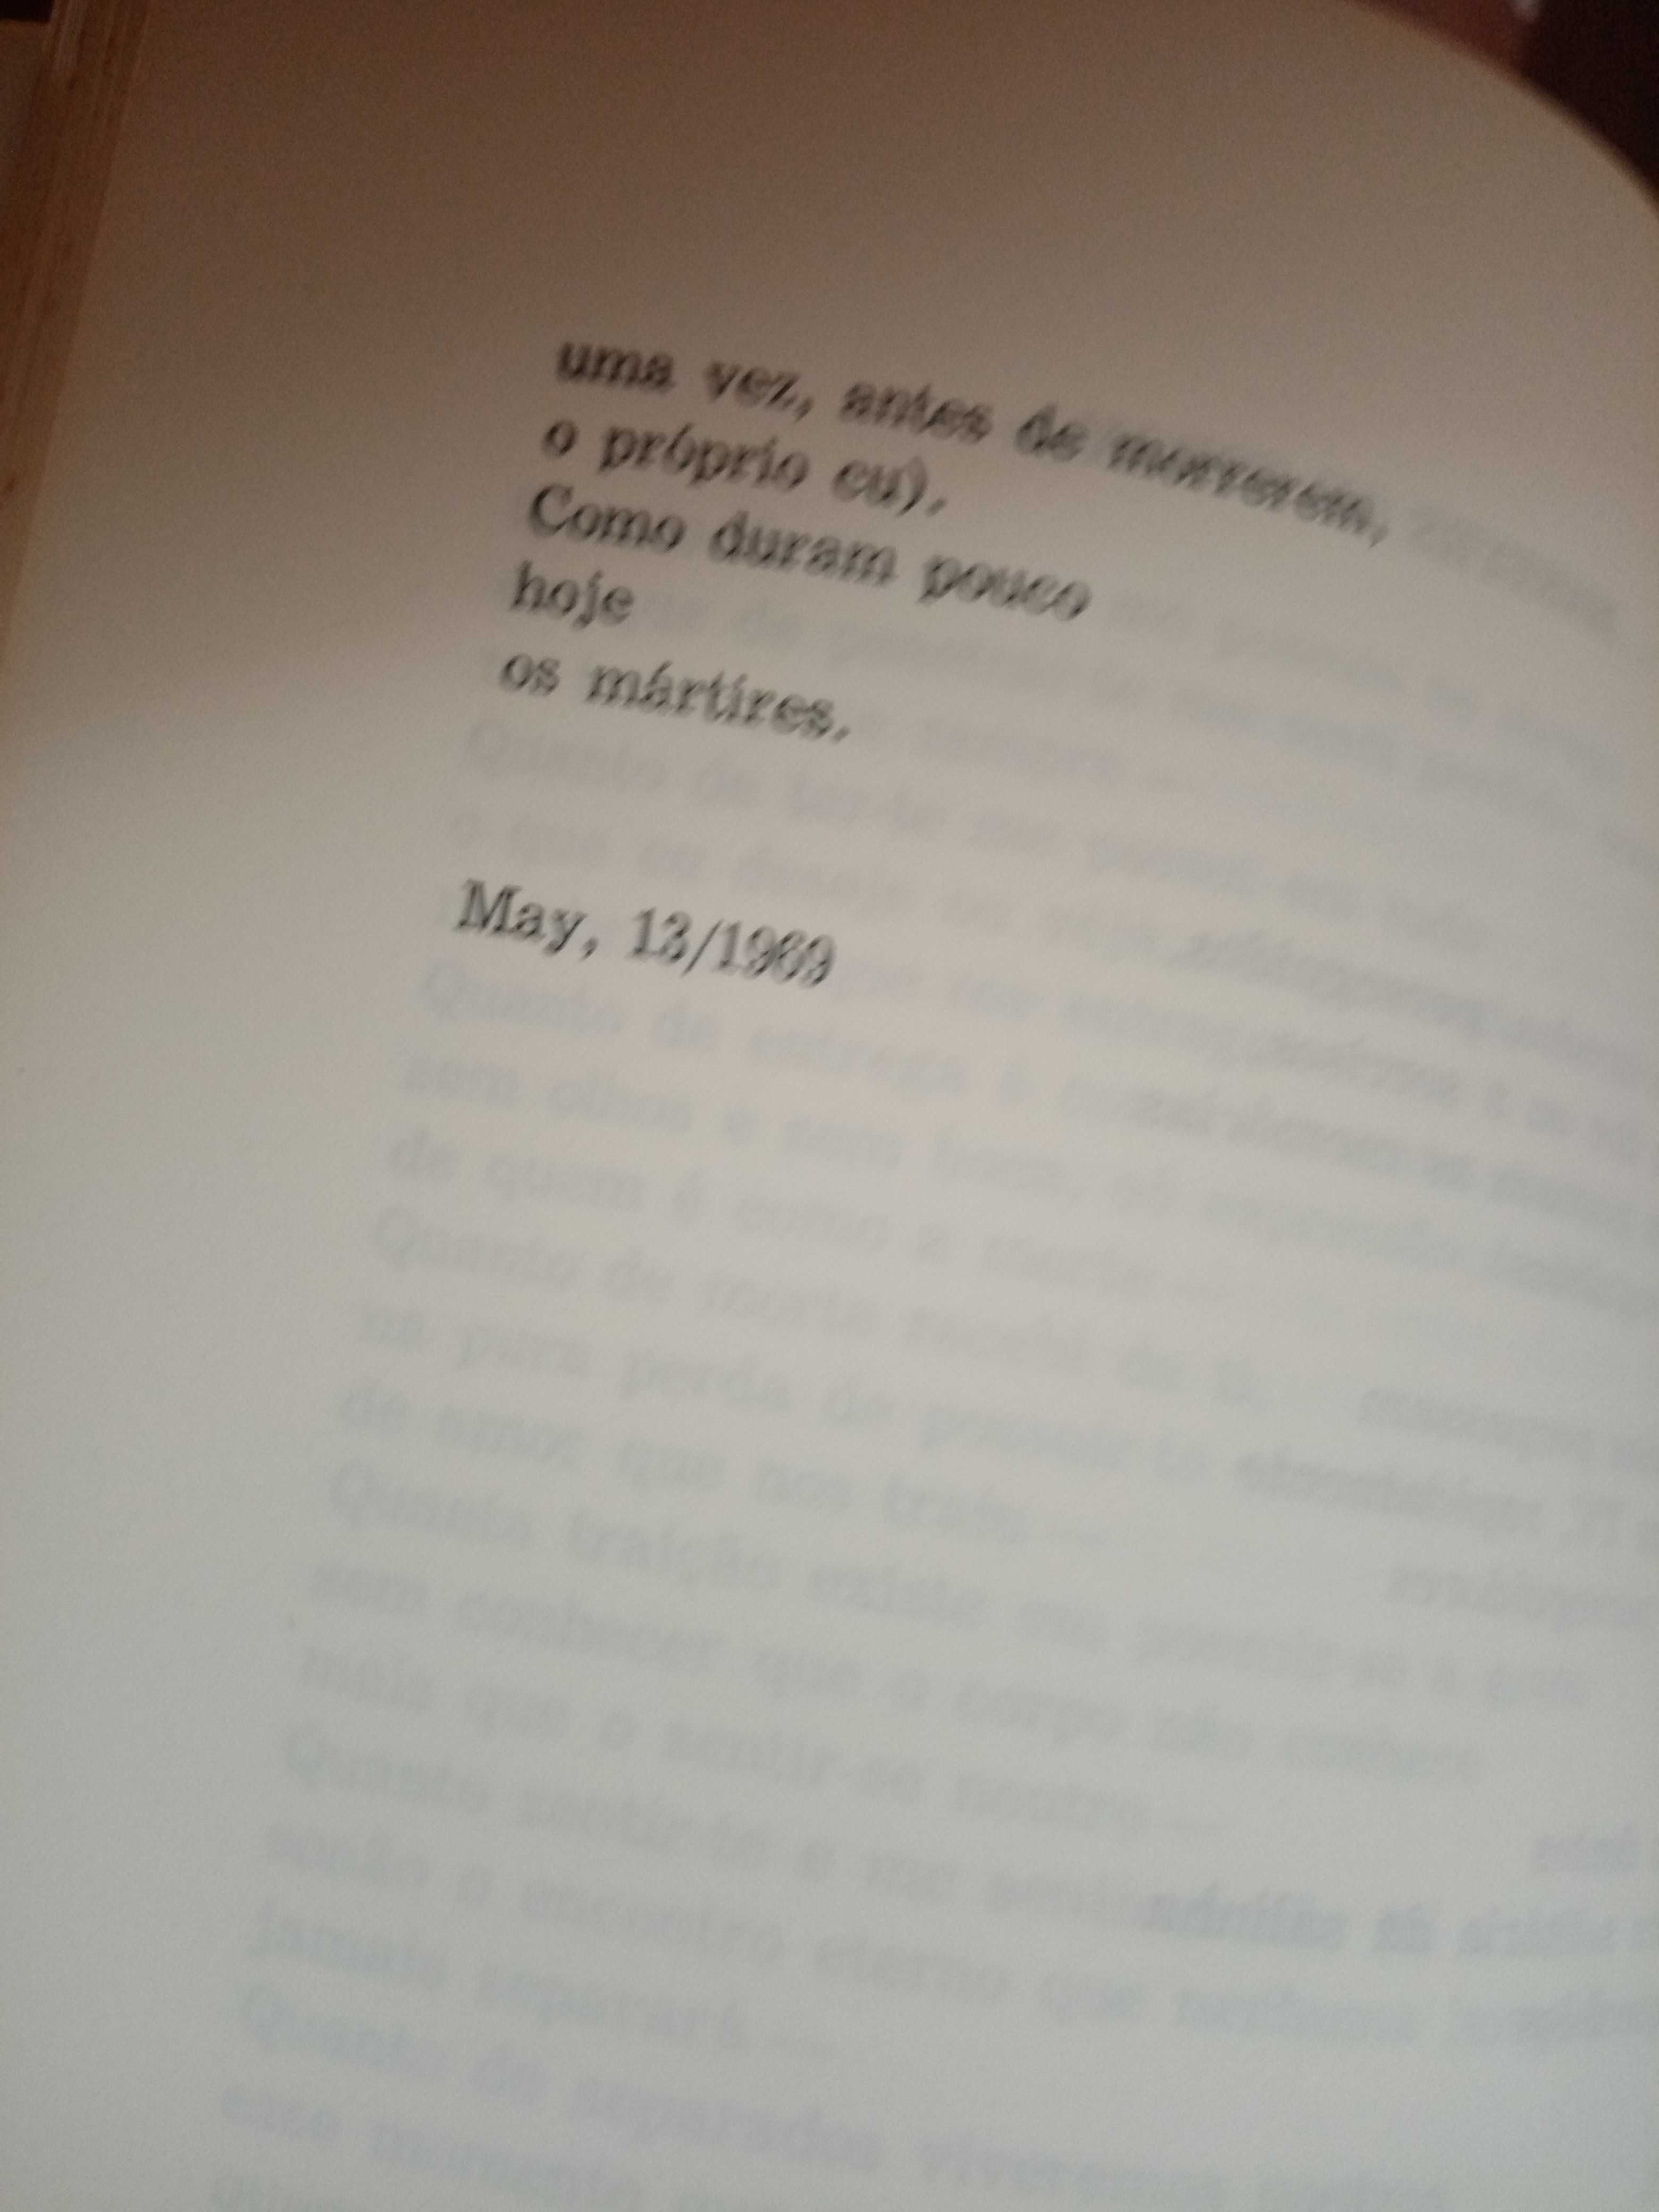 Poesia inédita de Jorge de Sena: Visão Perpétua